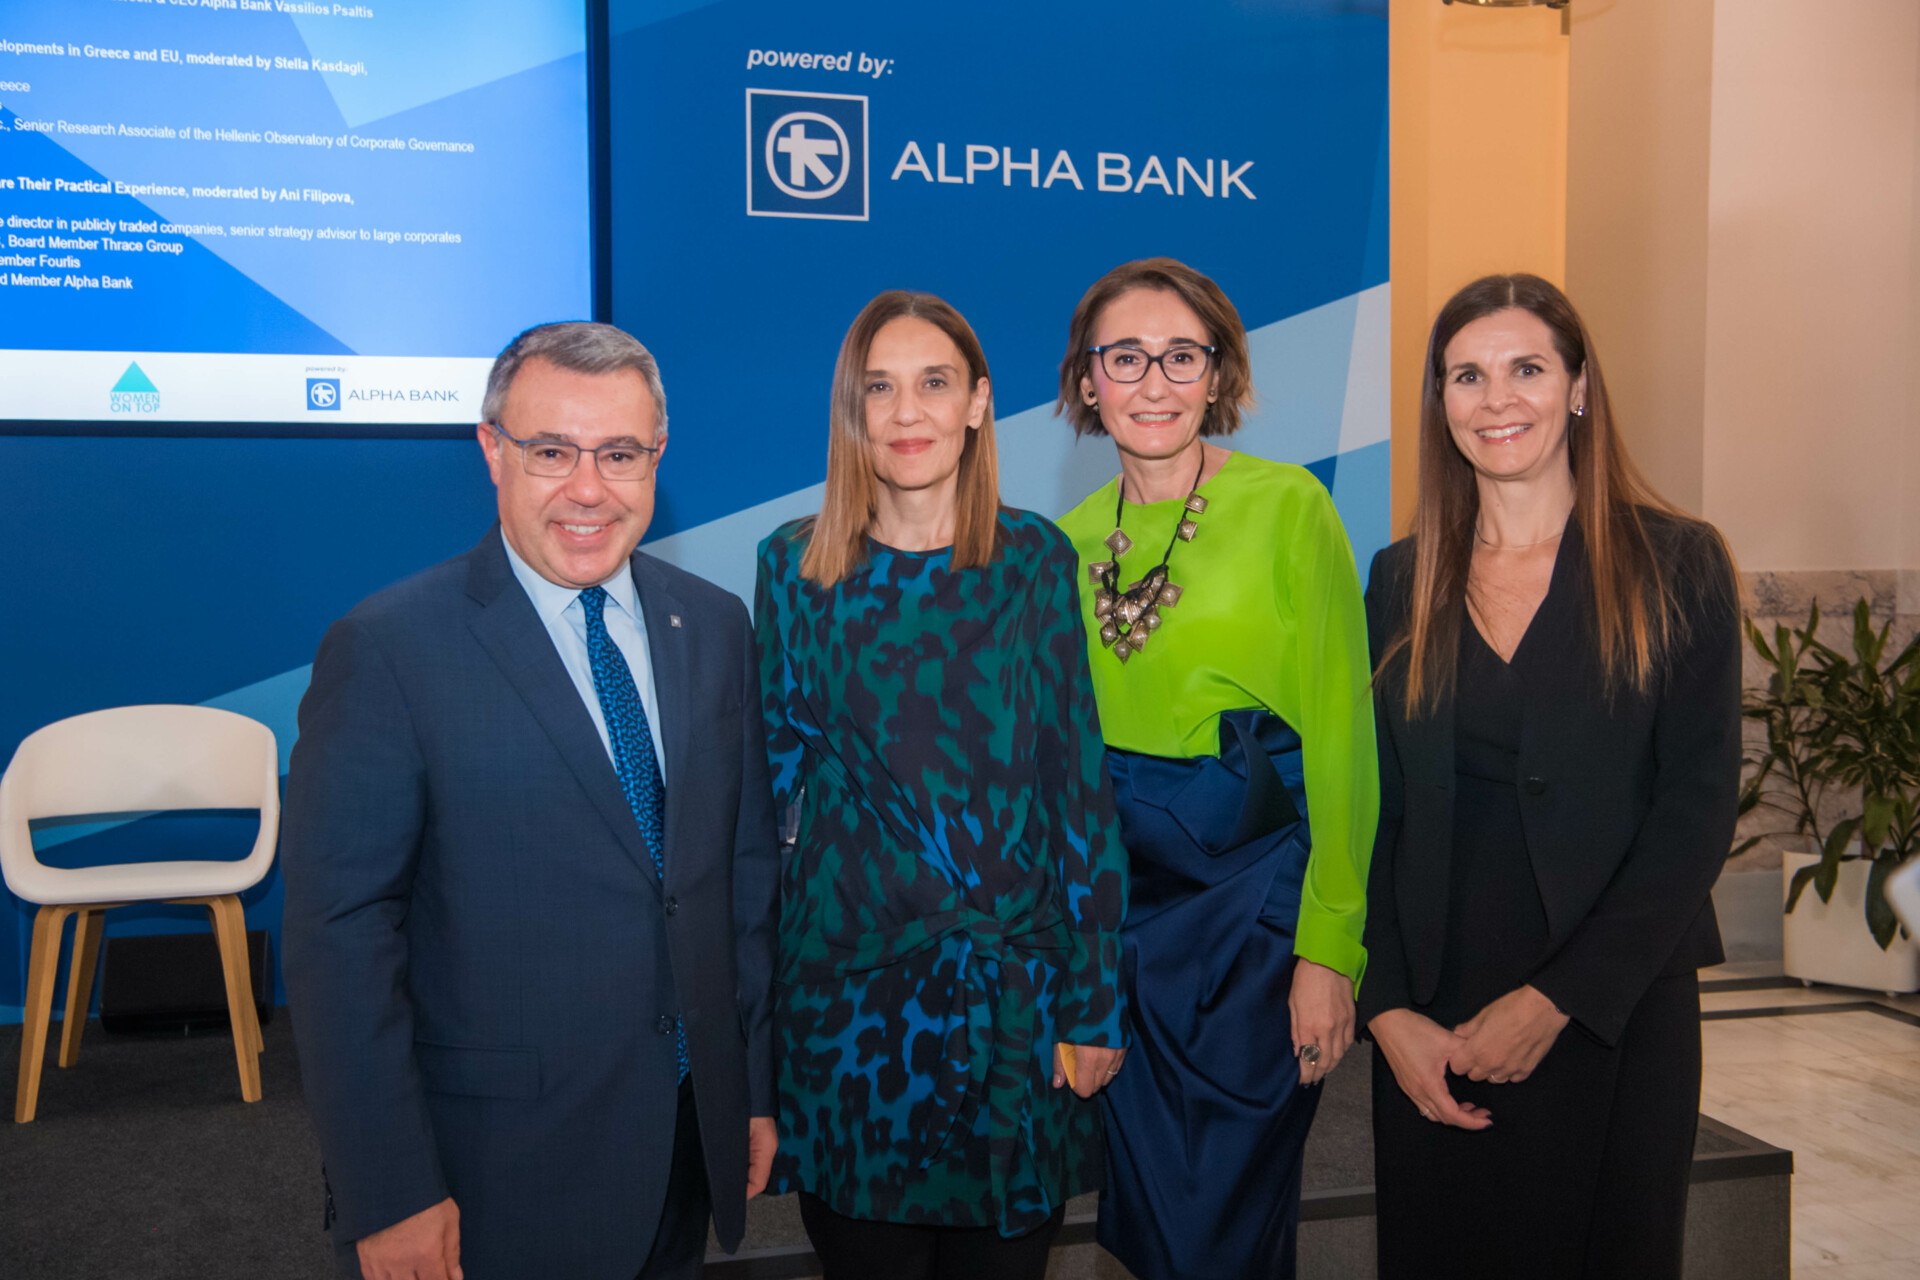 Ο Βασίλης Ψάλτης και η CHRO του Ομίλου Alpha Bank Φραγκίσκη Μελίσσα, σε στιγμιότυπο με τις Ani Filipova και Έλλη Ανδριοπούλου.